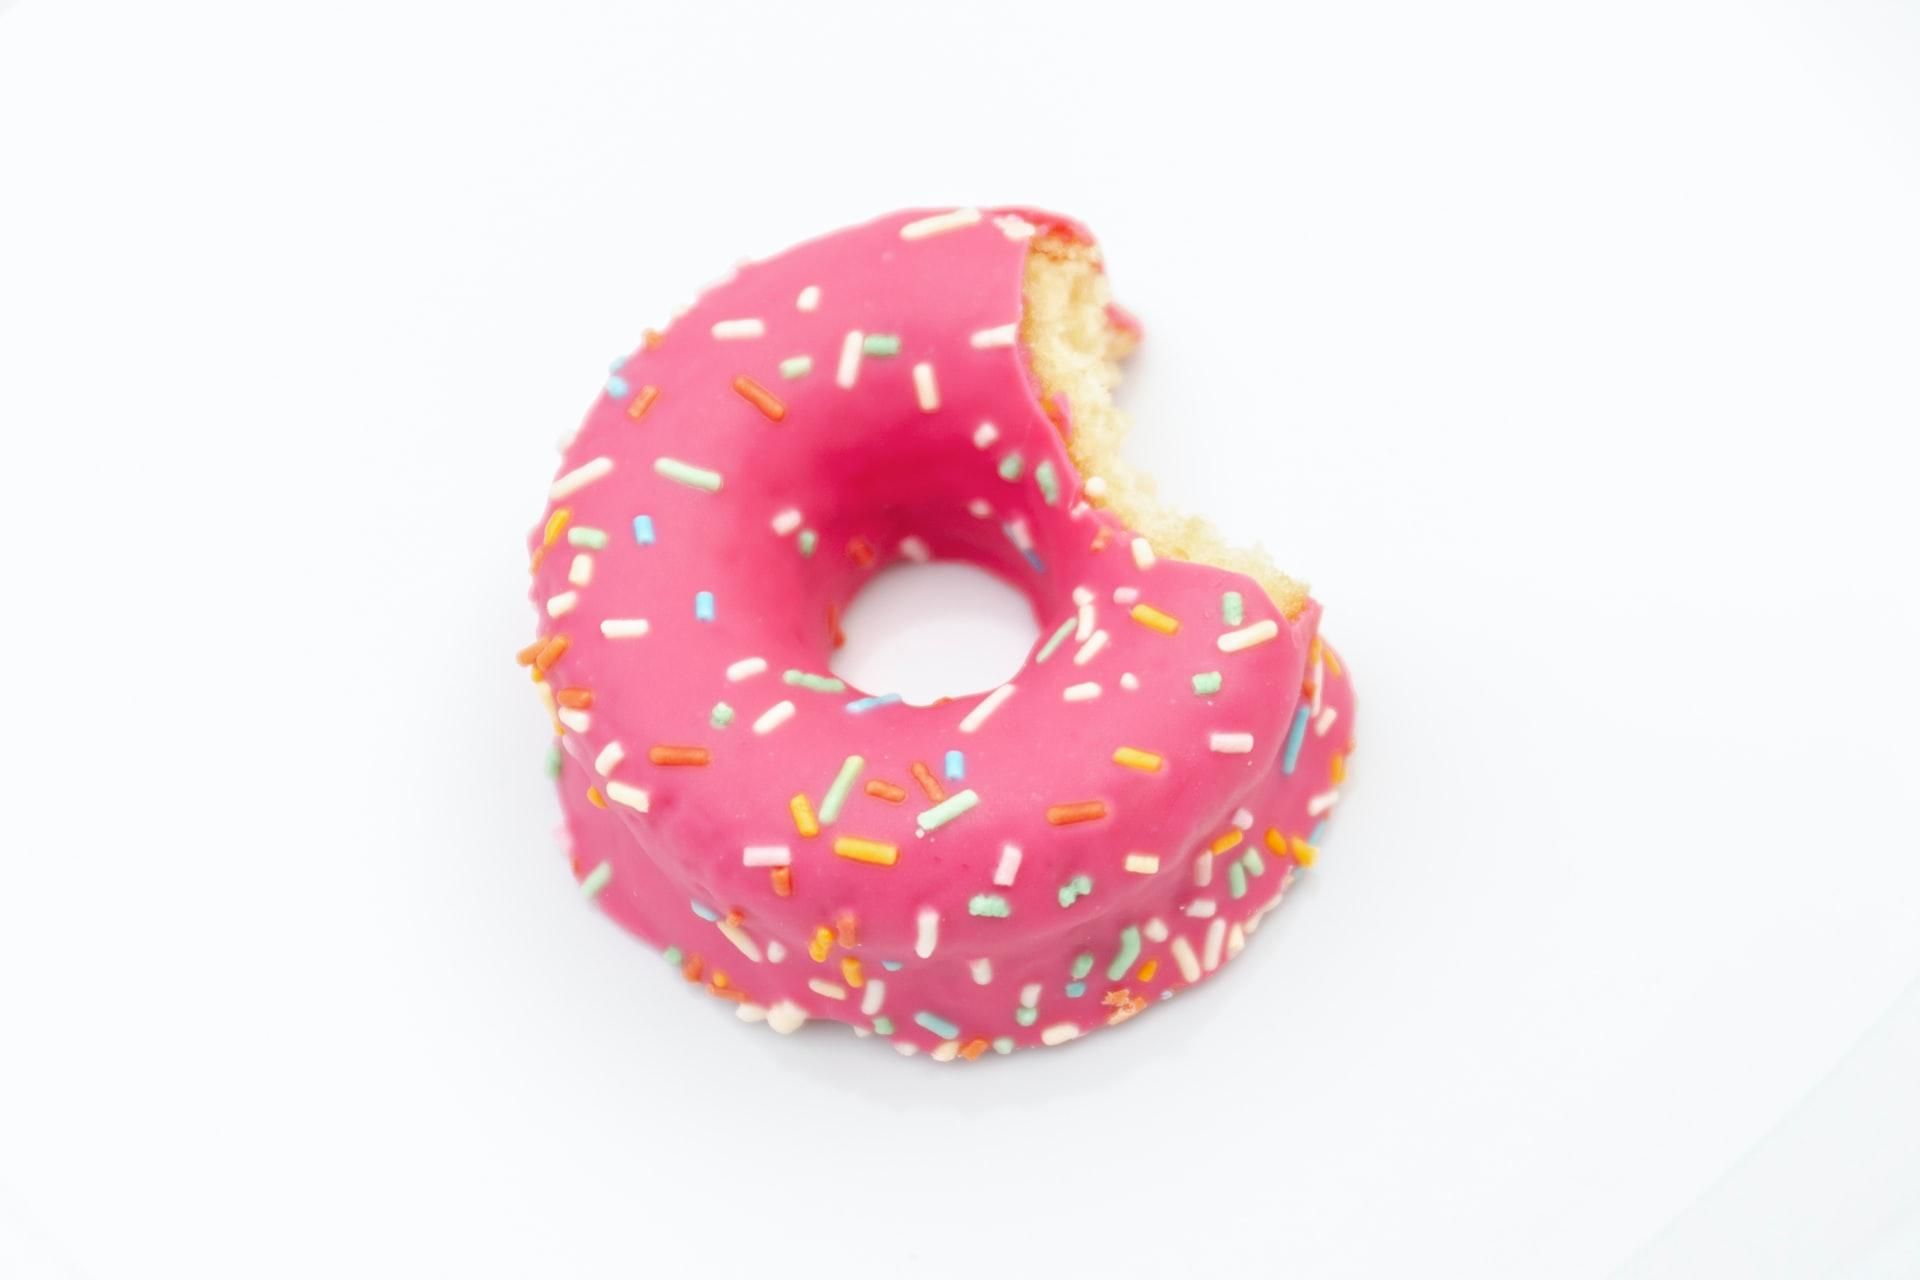 Залишився лише отвір від бублика: Dunkin' Donuts зупинила роботу та інвестиції у Росії - Бізнес